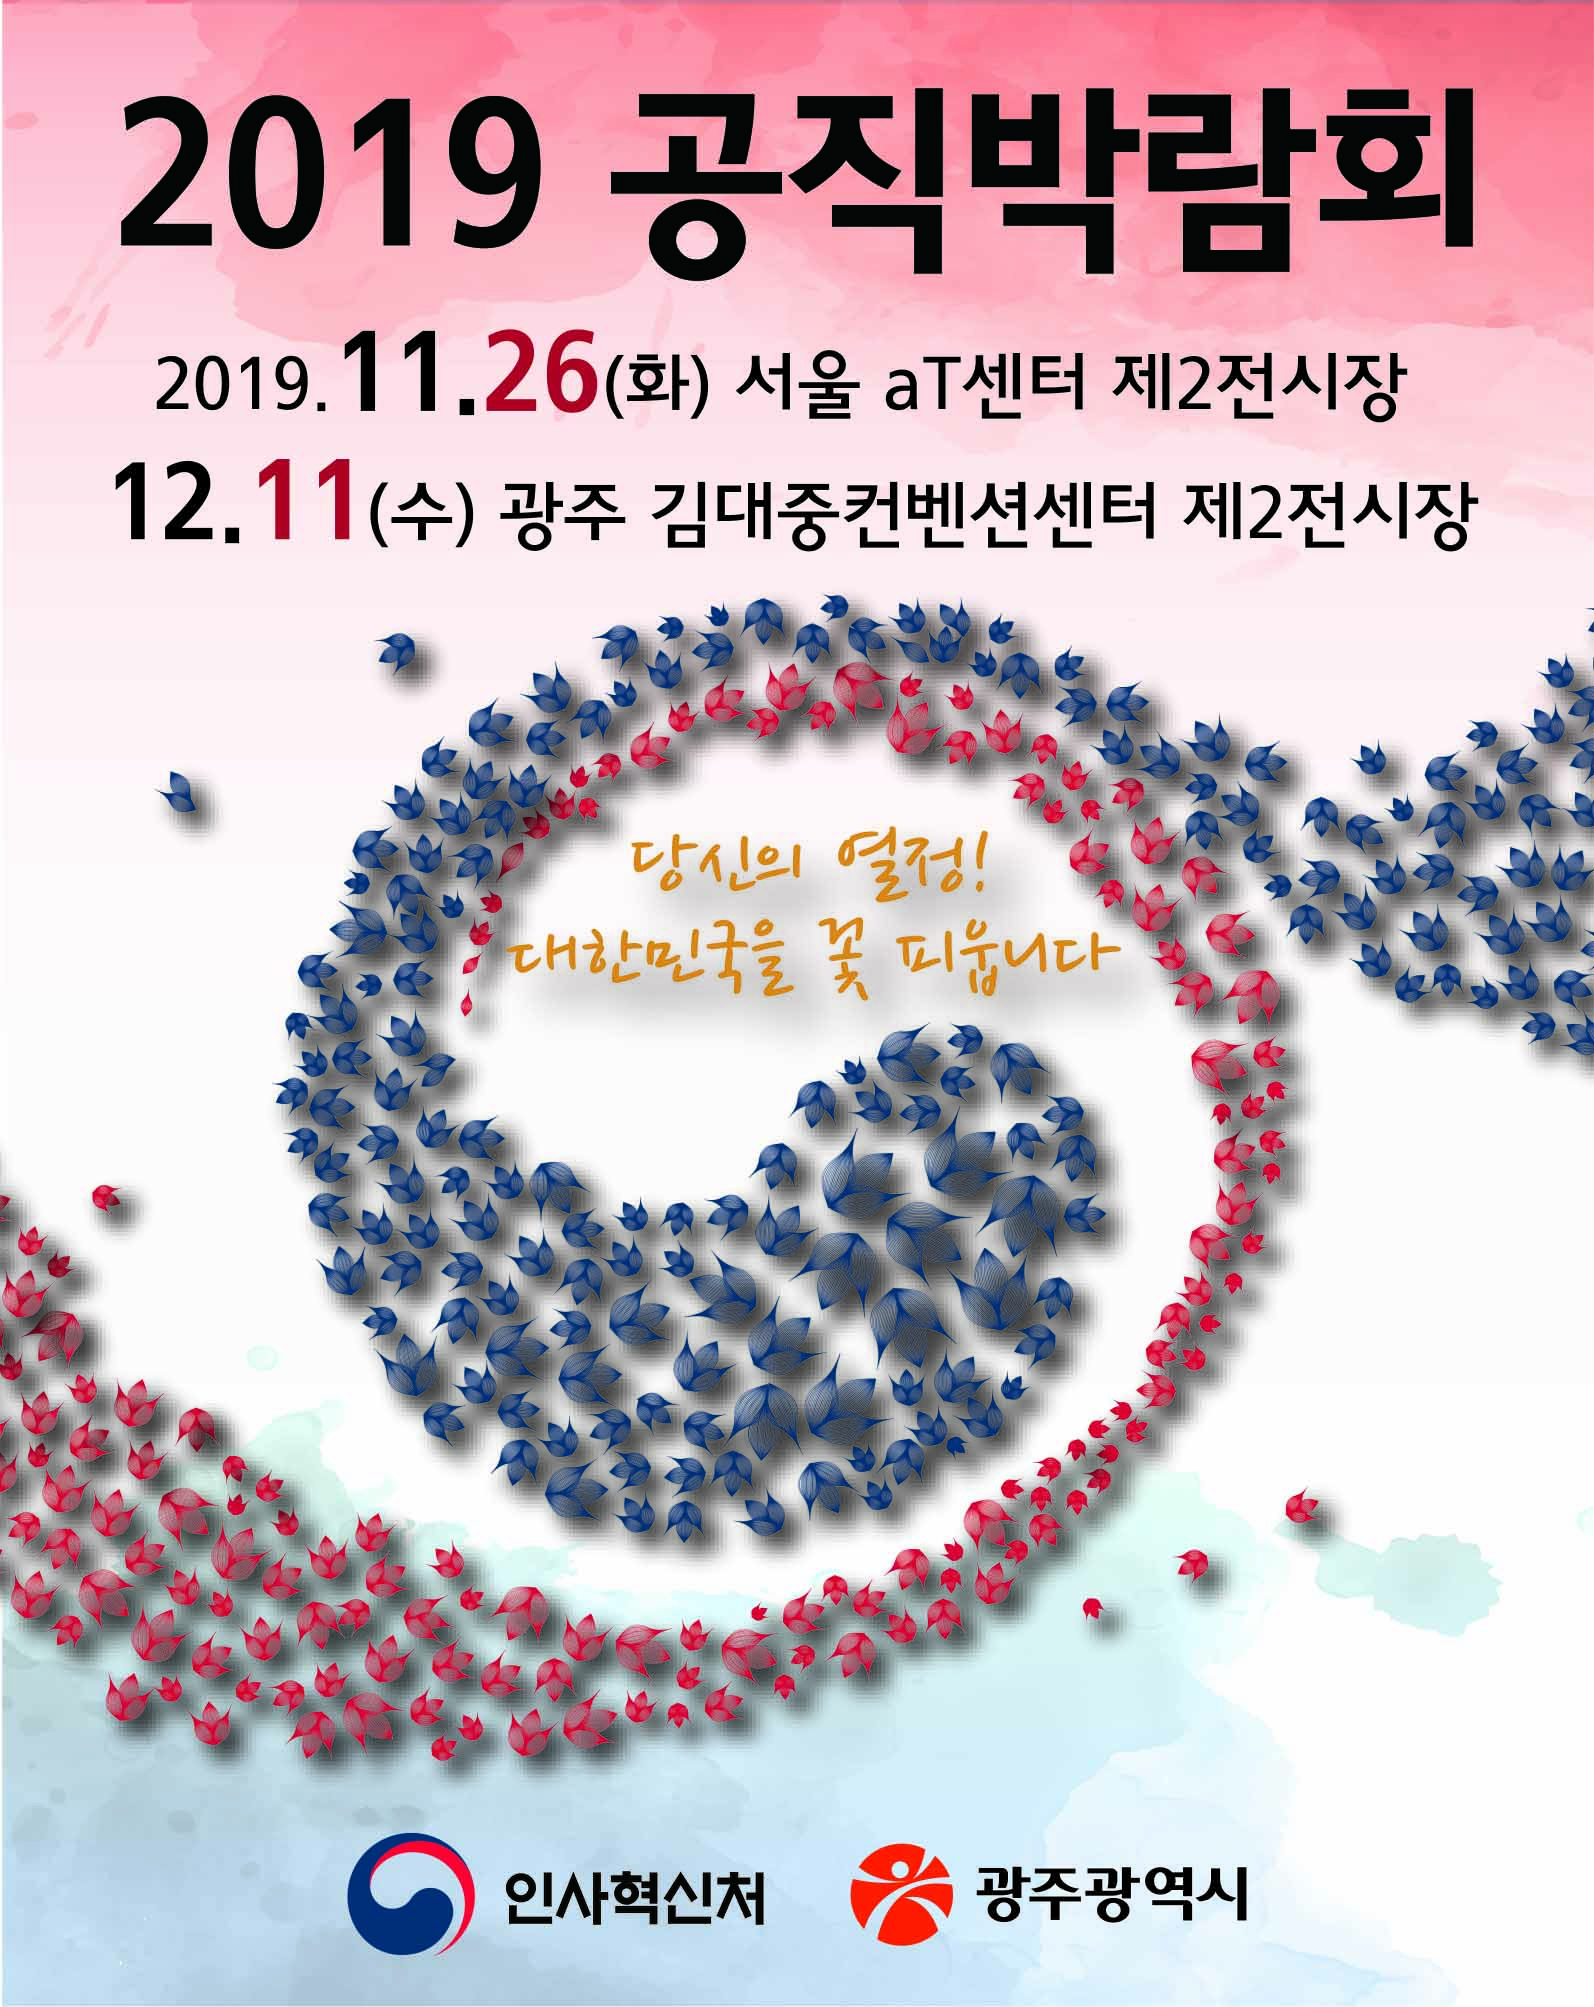 2019년 공직박람회 행사 개최 안내